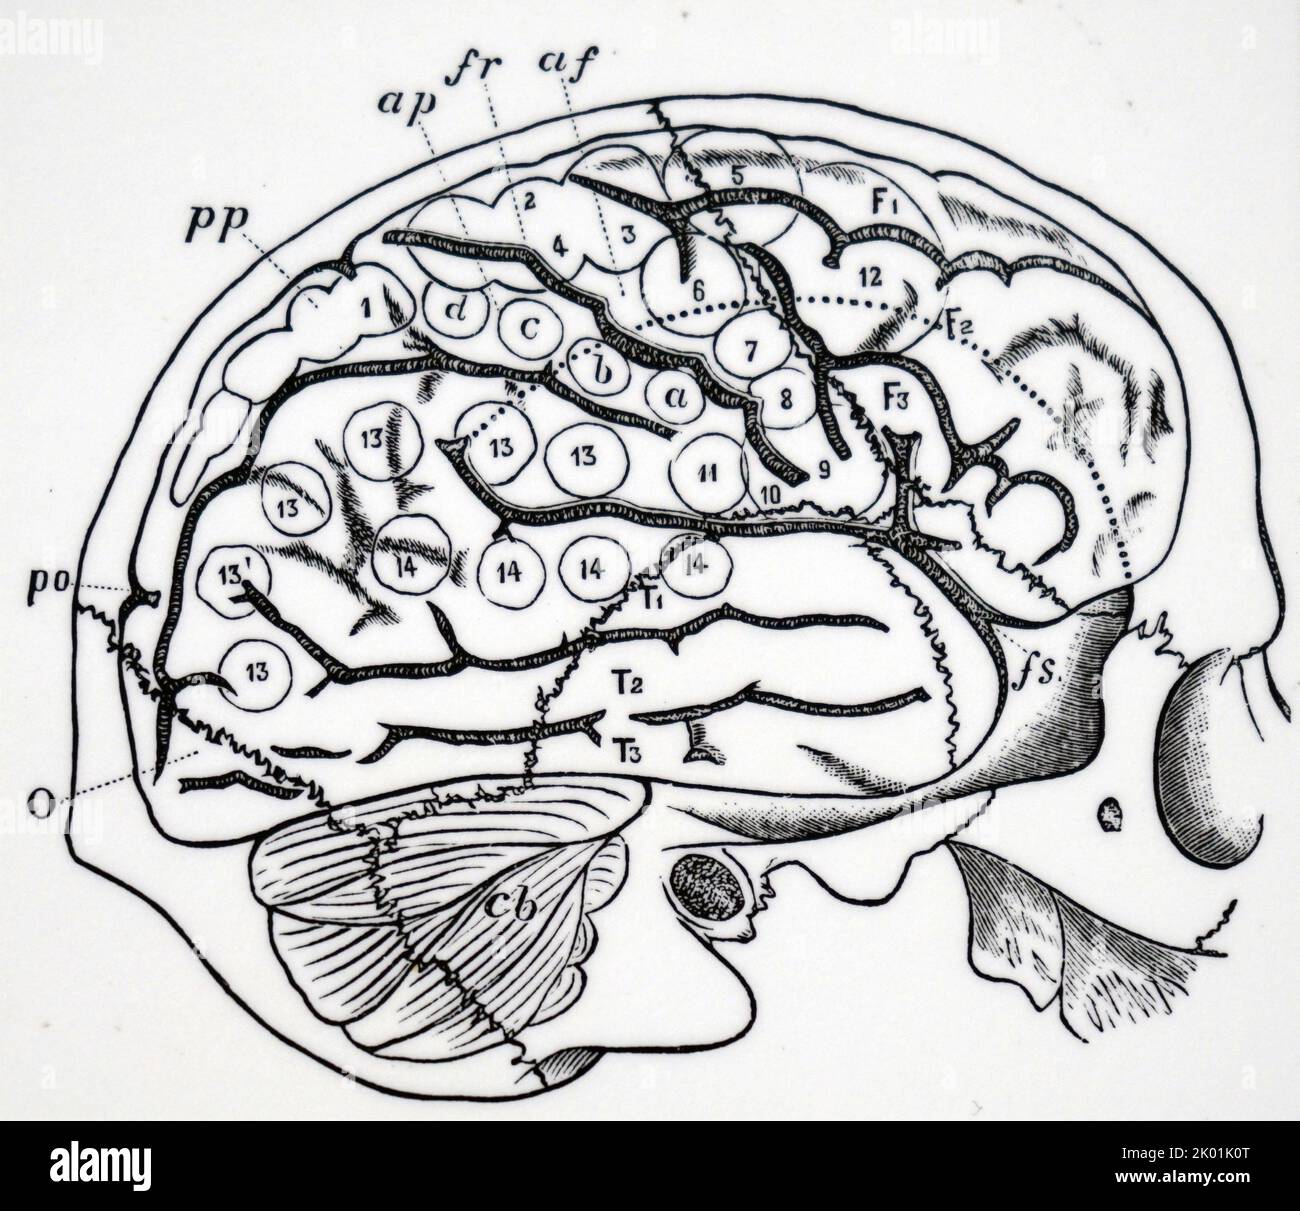 Cervello umano con le ossa del cranio sovrapposte e che mostrano le aree di Ferrier. Foto Stock